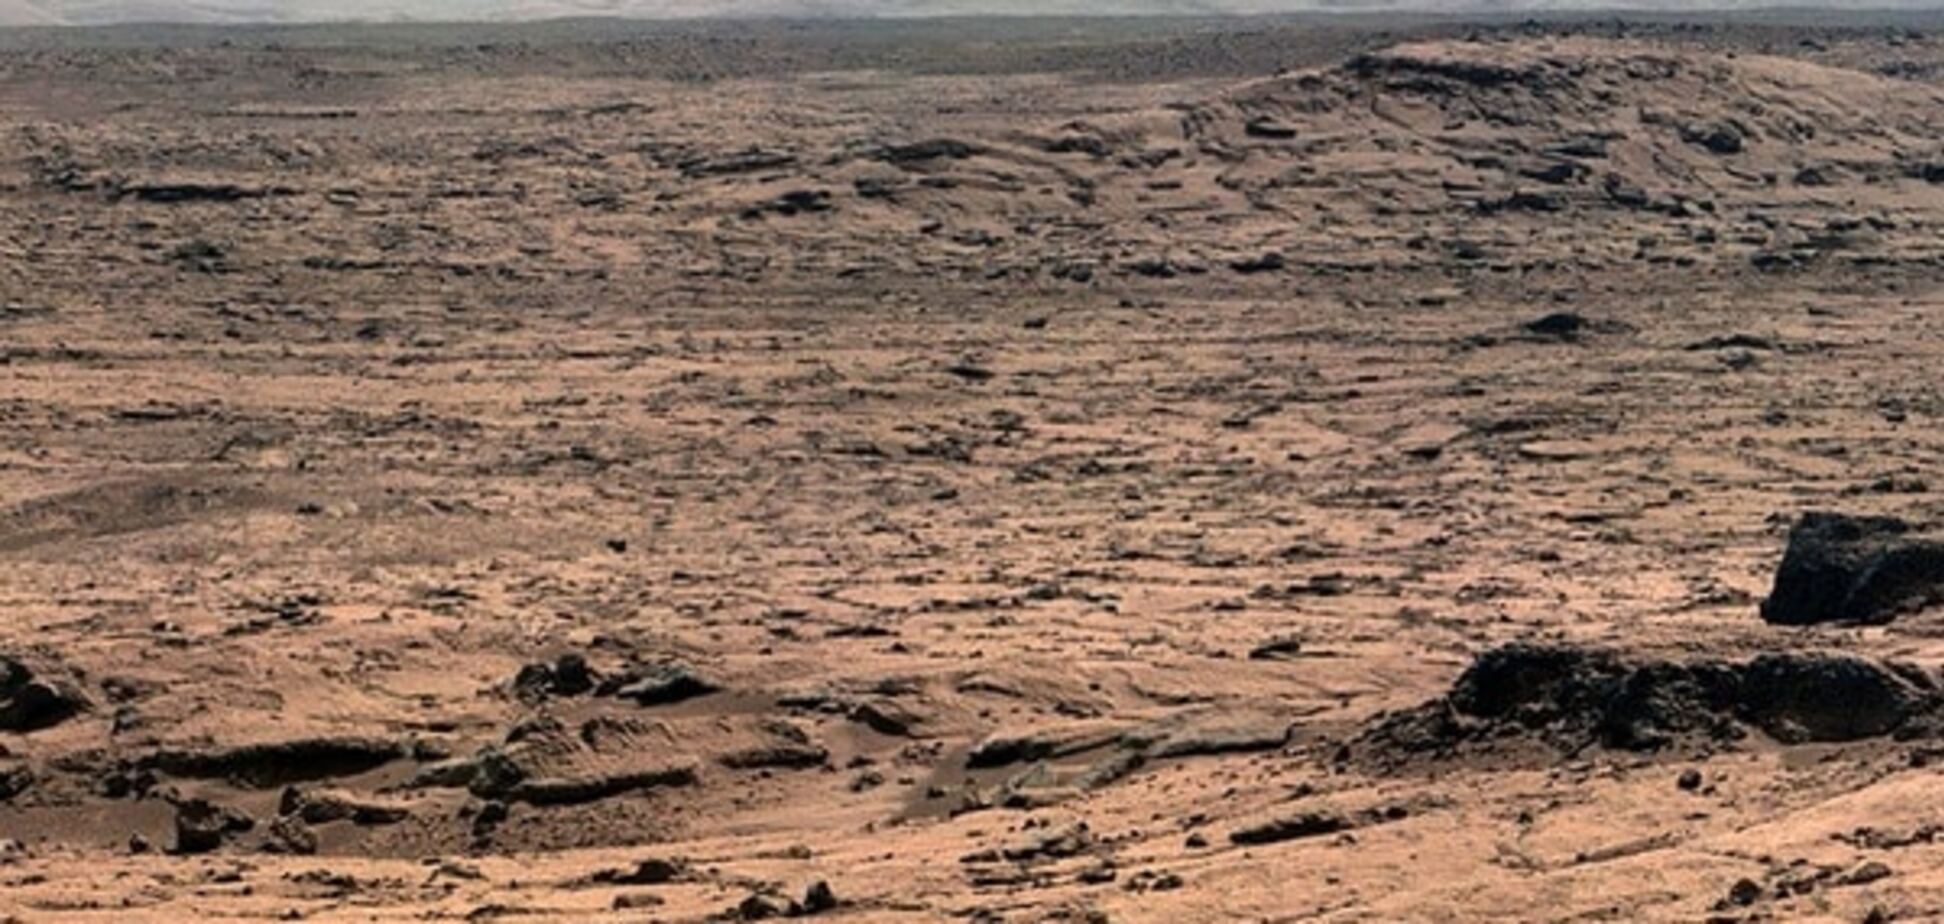 Уже скоро: стало известно, когда на Марс отправится первый человек